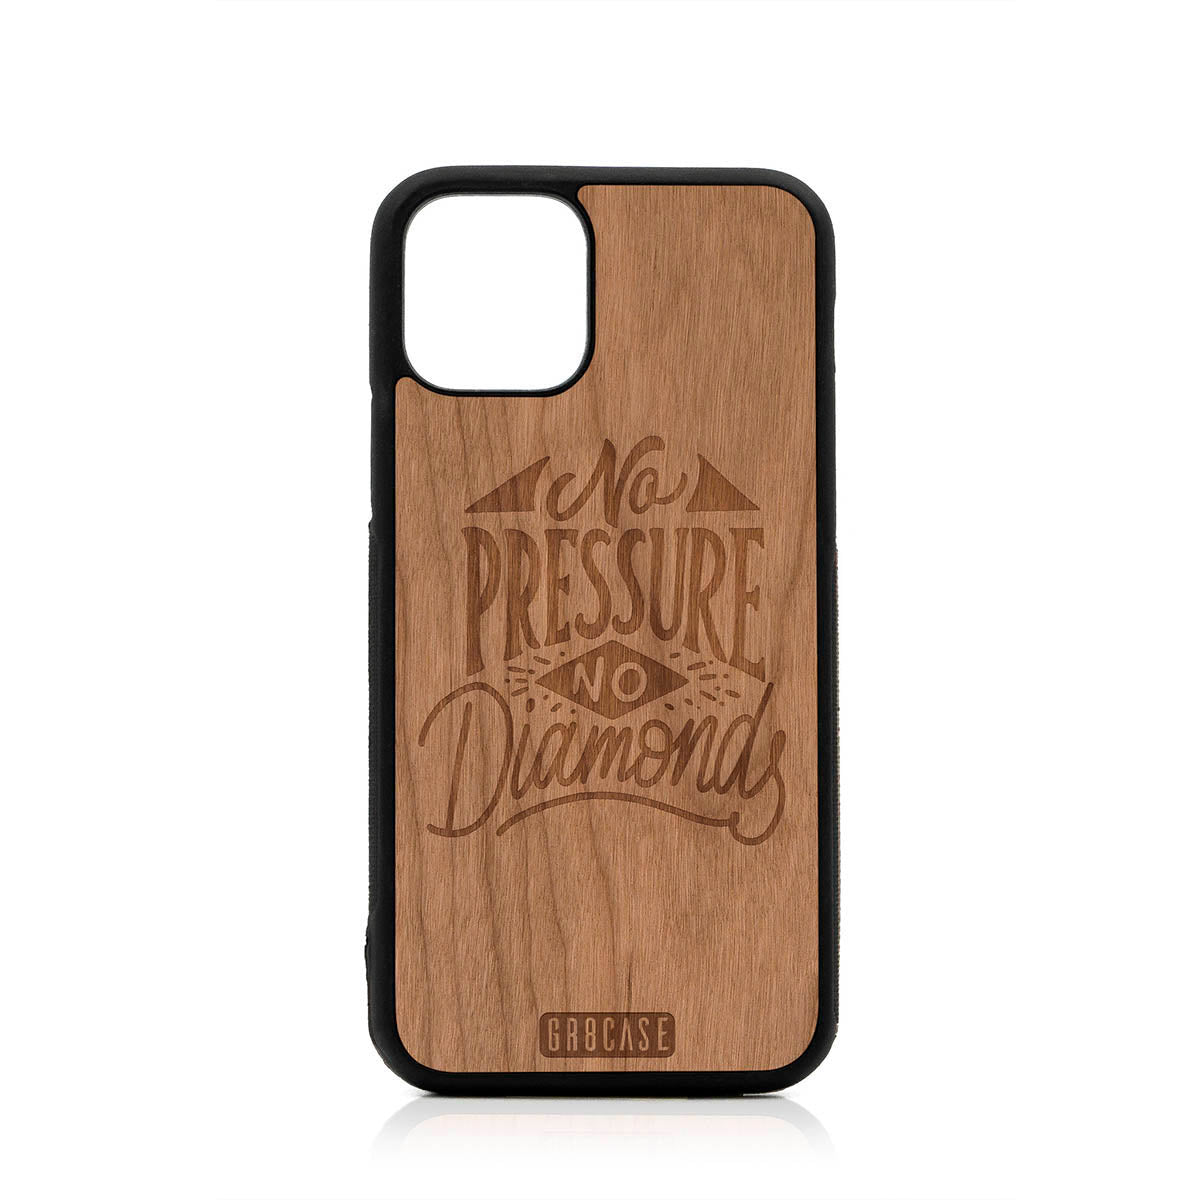 No Pressure No Diamonds Design Wood Case For iPhone 11 Pro